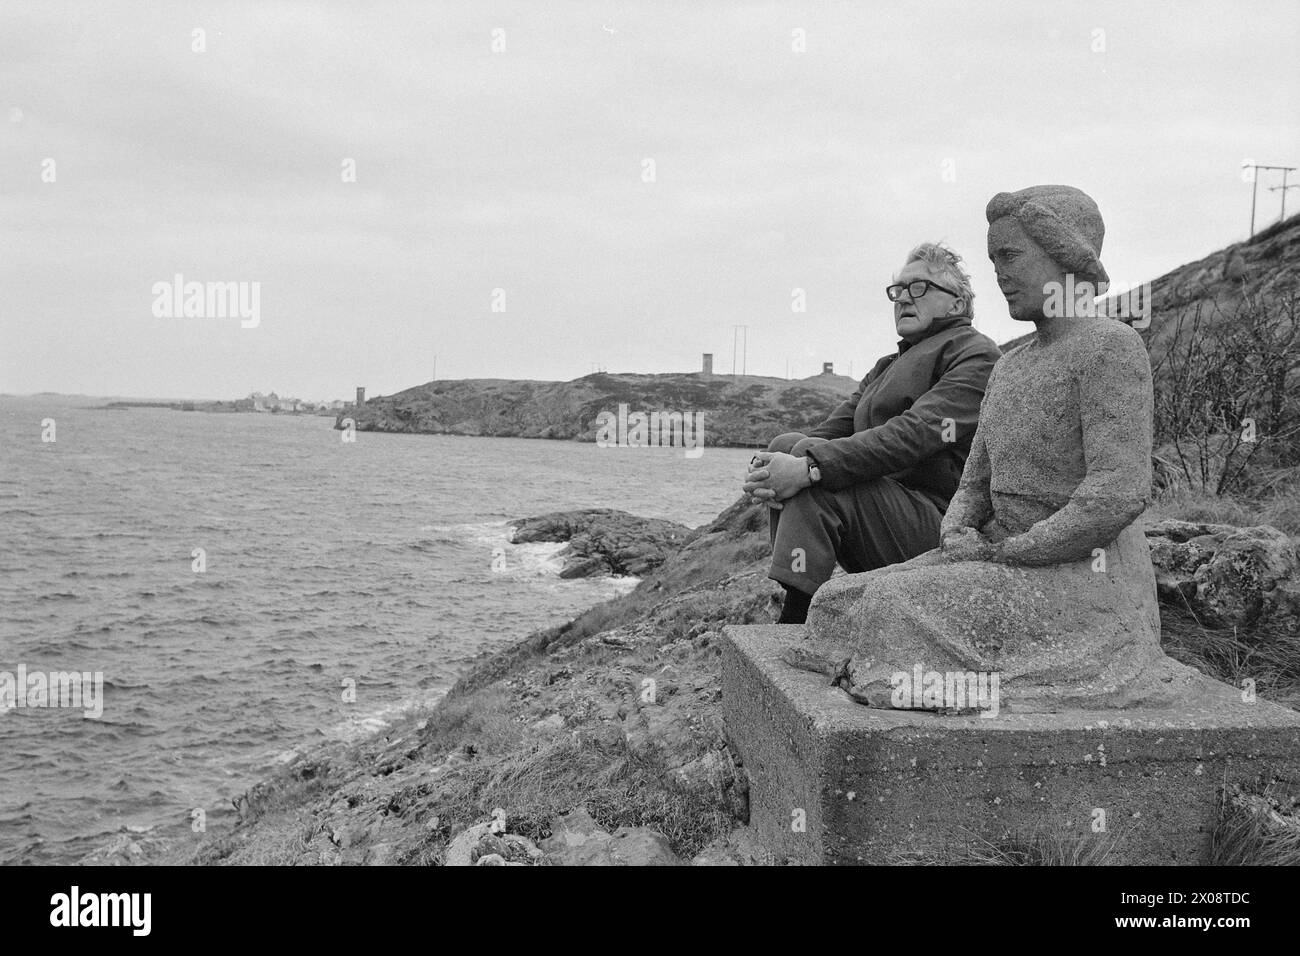 Attuale 16 - 6 -1973: Cento case e una mannLess di 20 anni fa, Bjørnsund era una comunità vivace. Oggi, c'è solo una persona rimasta in questo villaggio di pescatori. Ora Bjørnstad diventerà una destinazione turistica. La gente è ansiosa di comprare una casa qui in questa solitudine. Il 71enne Rolf Thoresen è venuto a patti con la sua esistenza solitaria su Bjørnsund. Anche la fisher girl, la statua che simboleggia la solitudine e la perdita, siede sola e abbandonata al suo avamposto. Foto: Sverre A. Børretzen / Aktuell / NTB ***FOTO NON ELABORATA*** Foto Stock